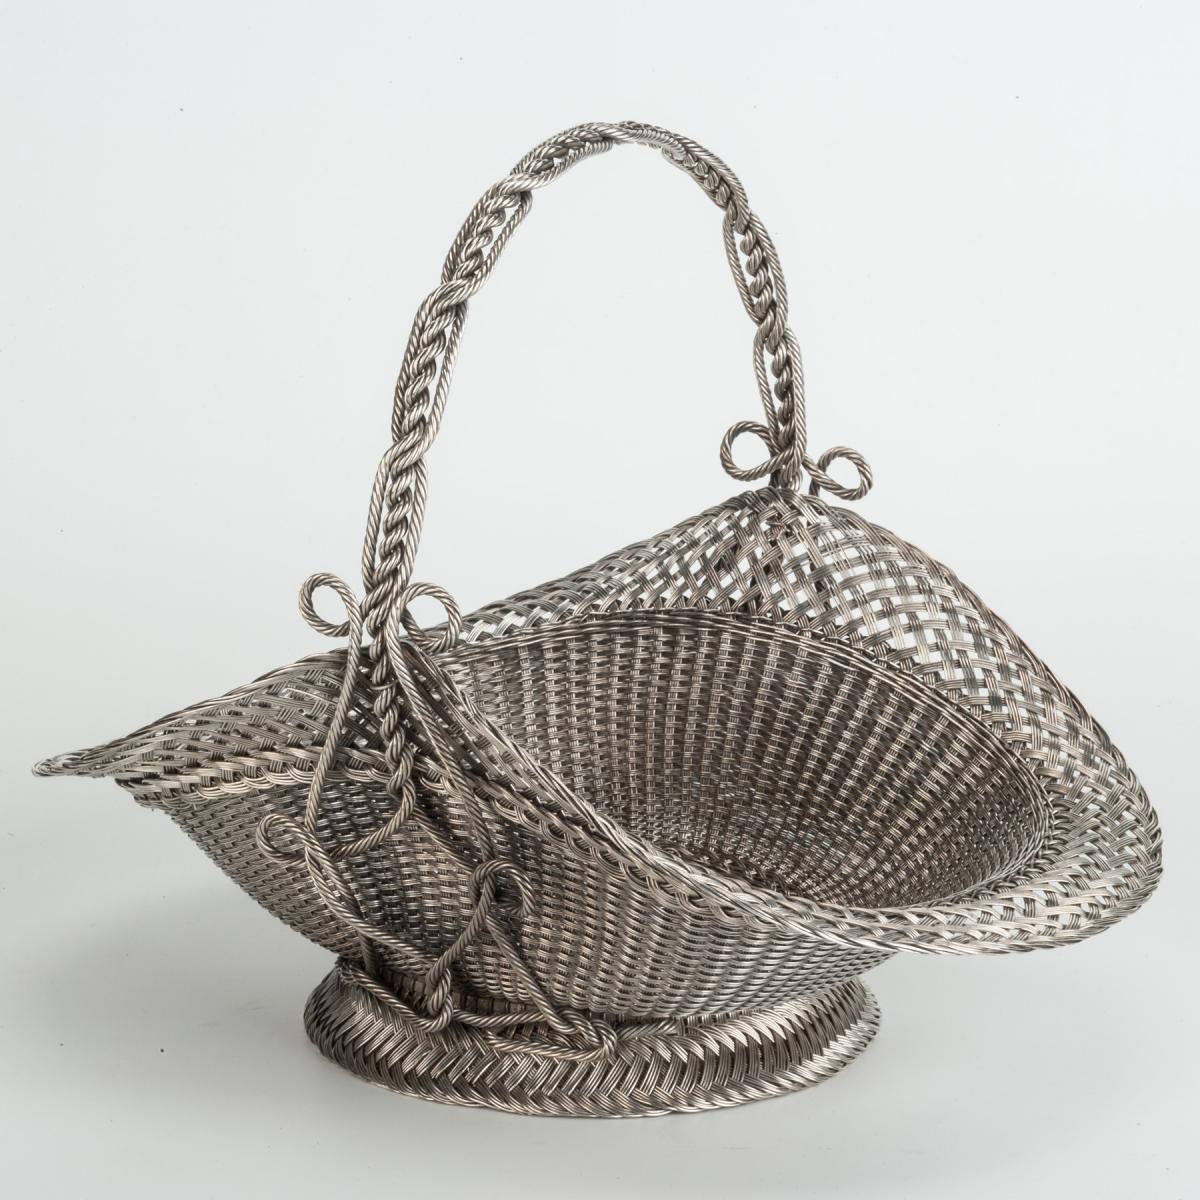 Dutch Sewing Basket